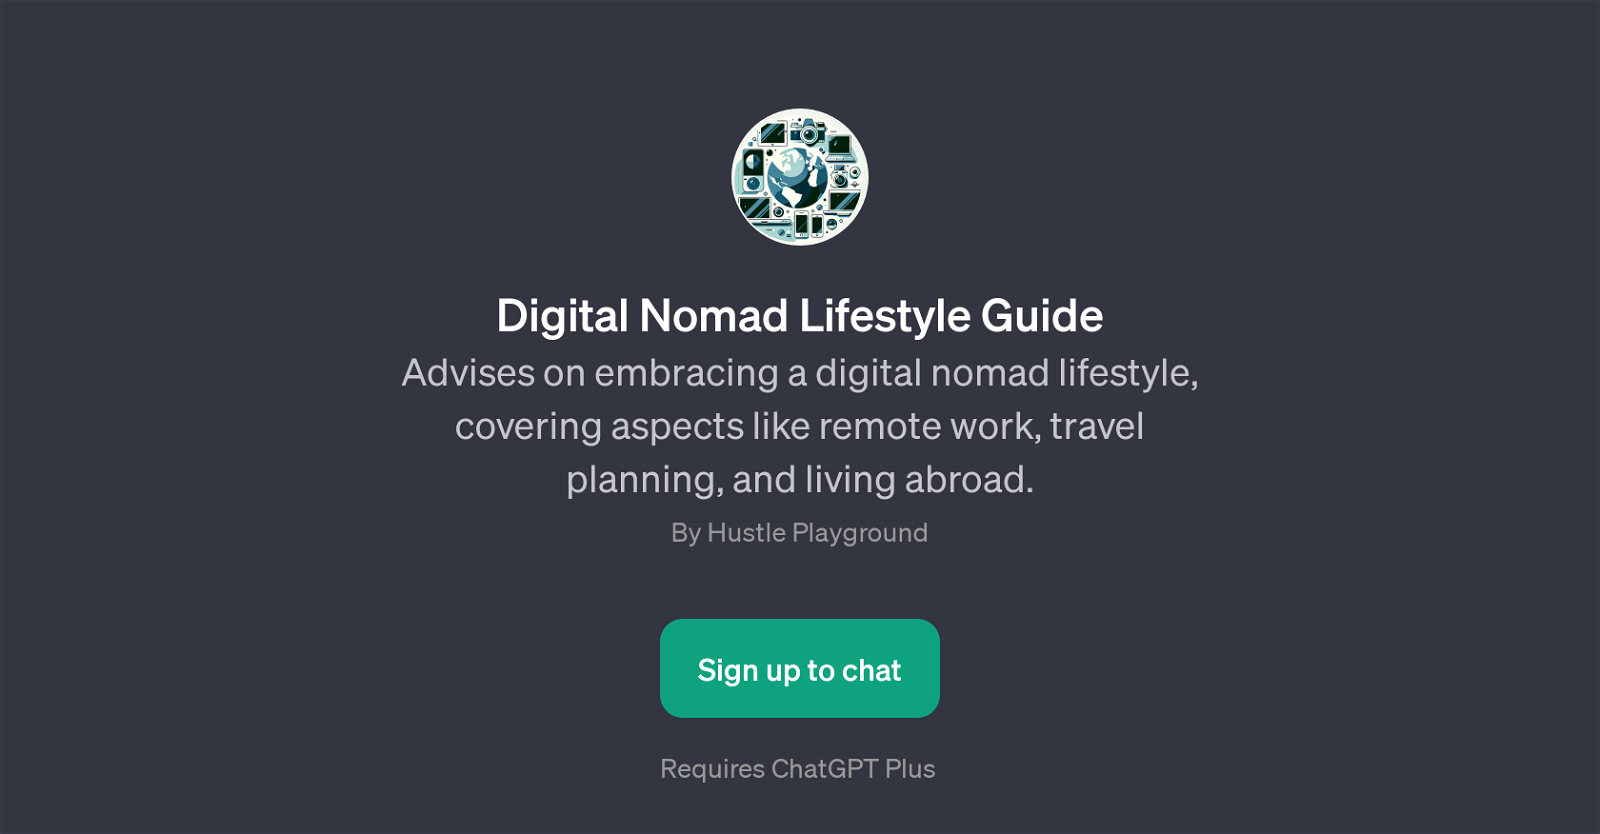 Digital Nomad Lifestyle Guide website